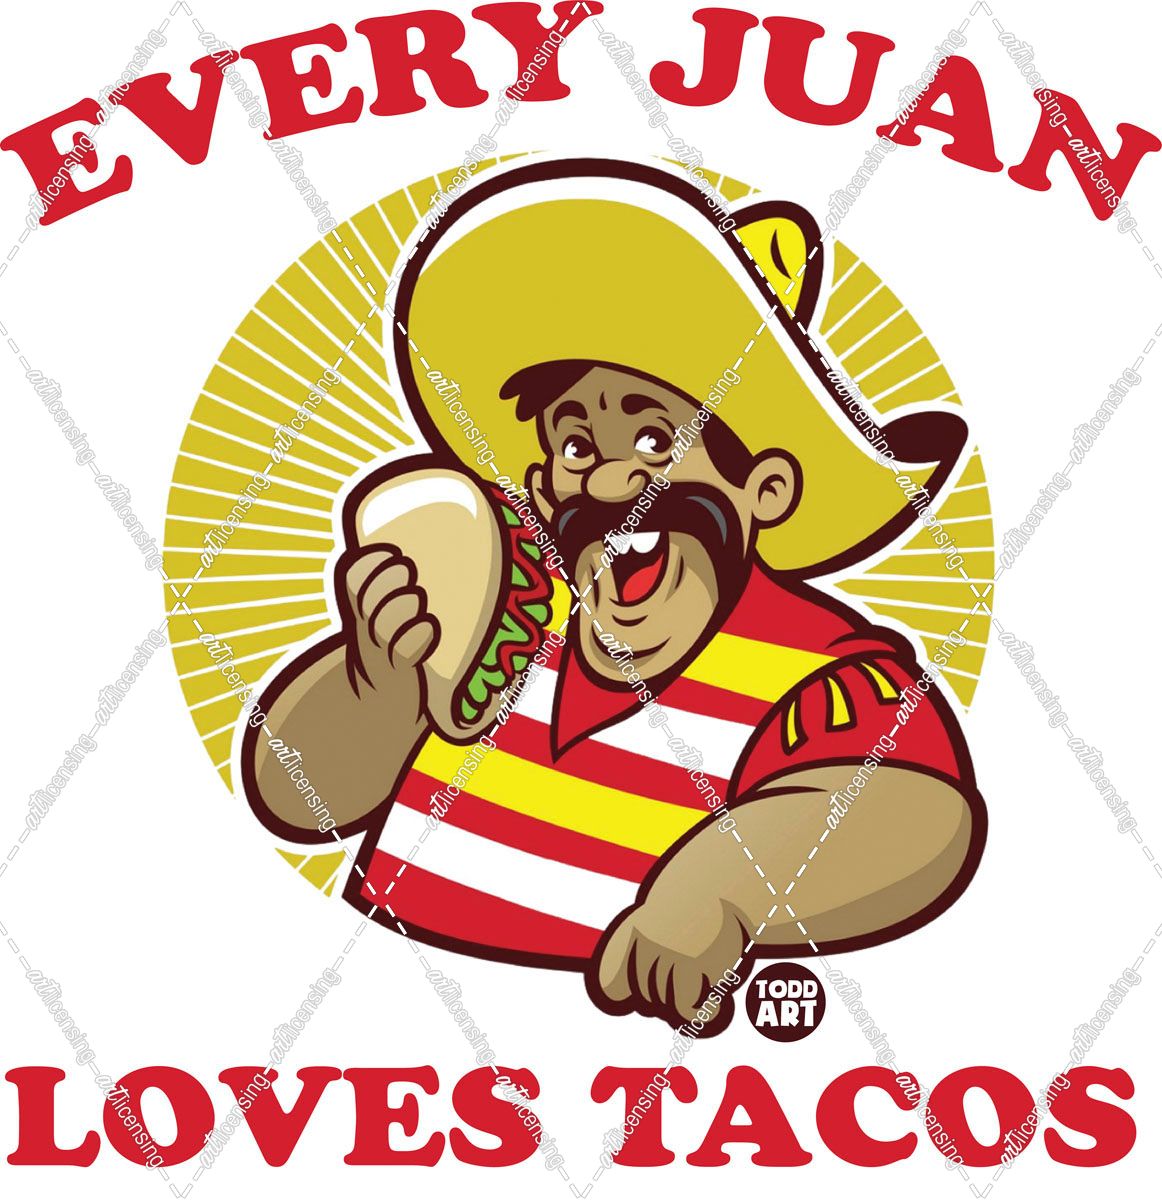 Every Juan Loves Tacos